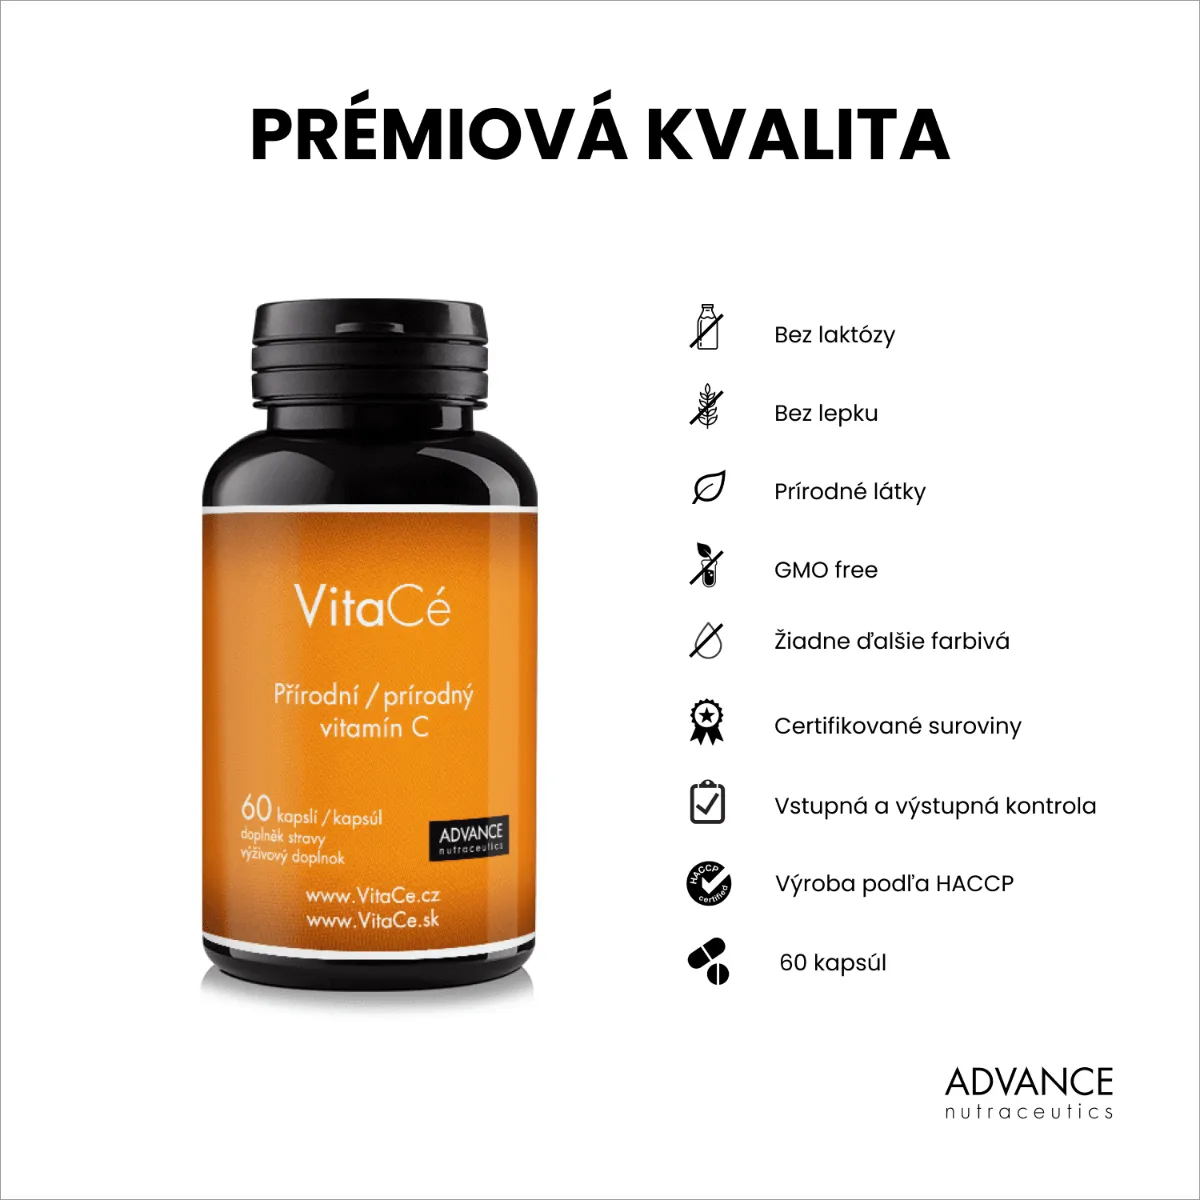 VitaCé ADVANCE 60 cps. najsilnejší prírodný vitamín C 1×60 cps, výživový doplnok